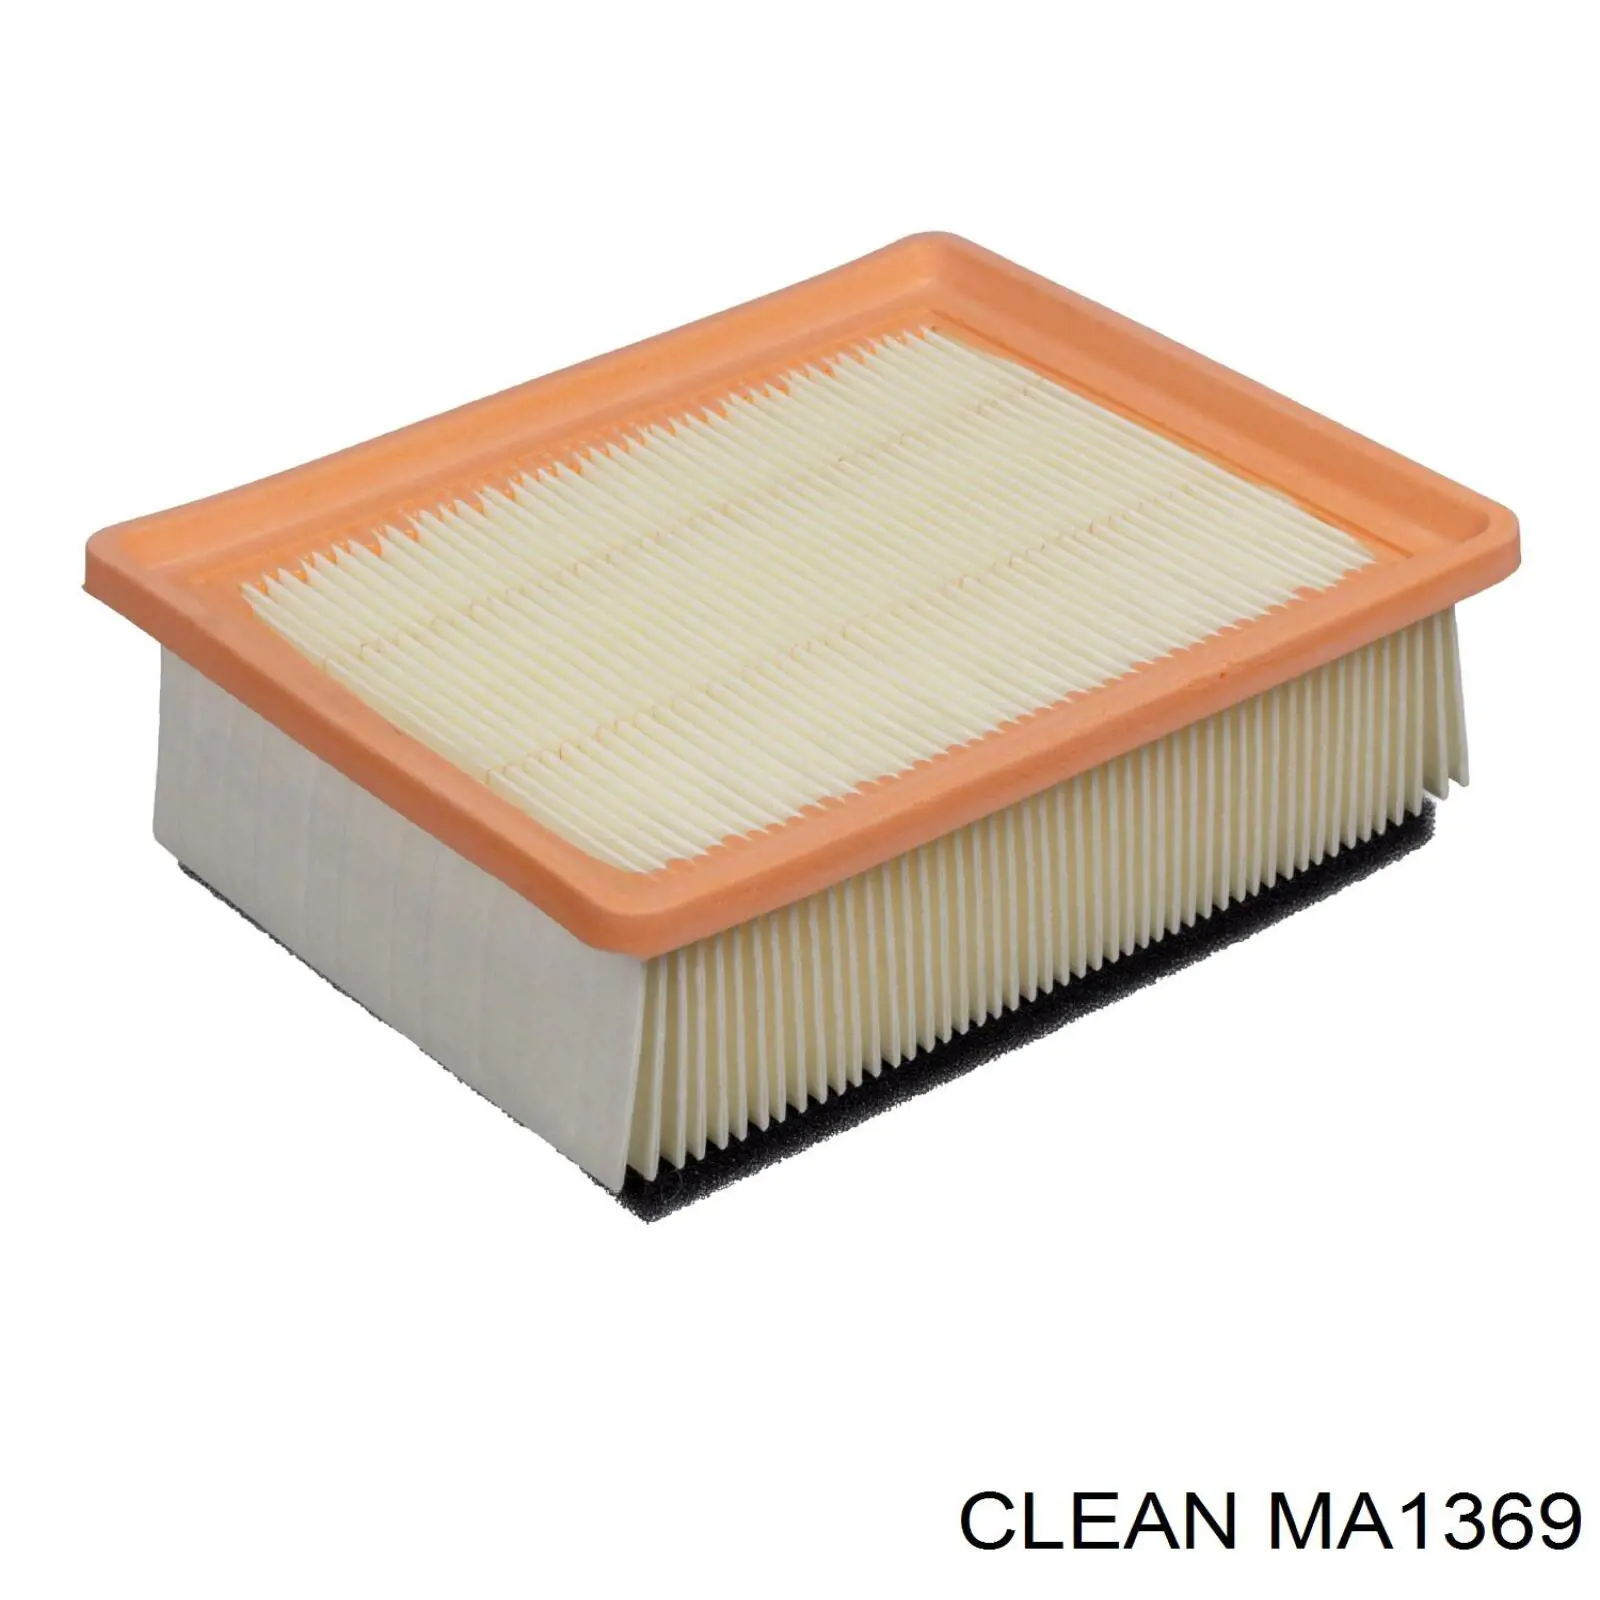 MA1369 Clean filtro de aire